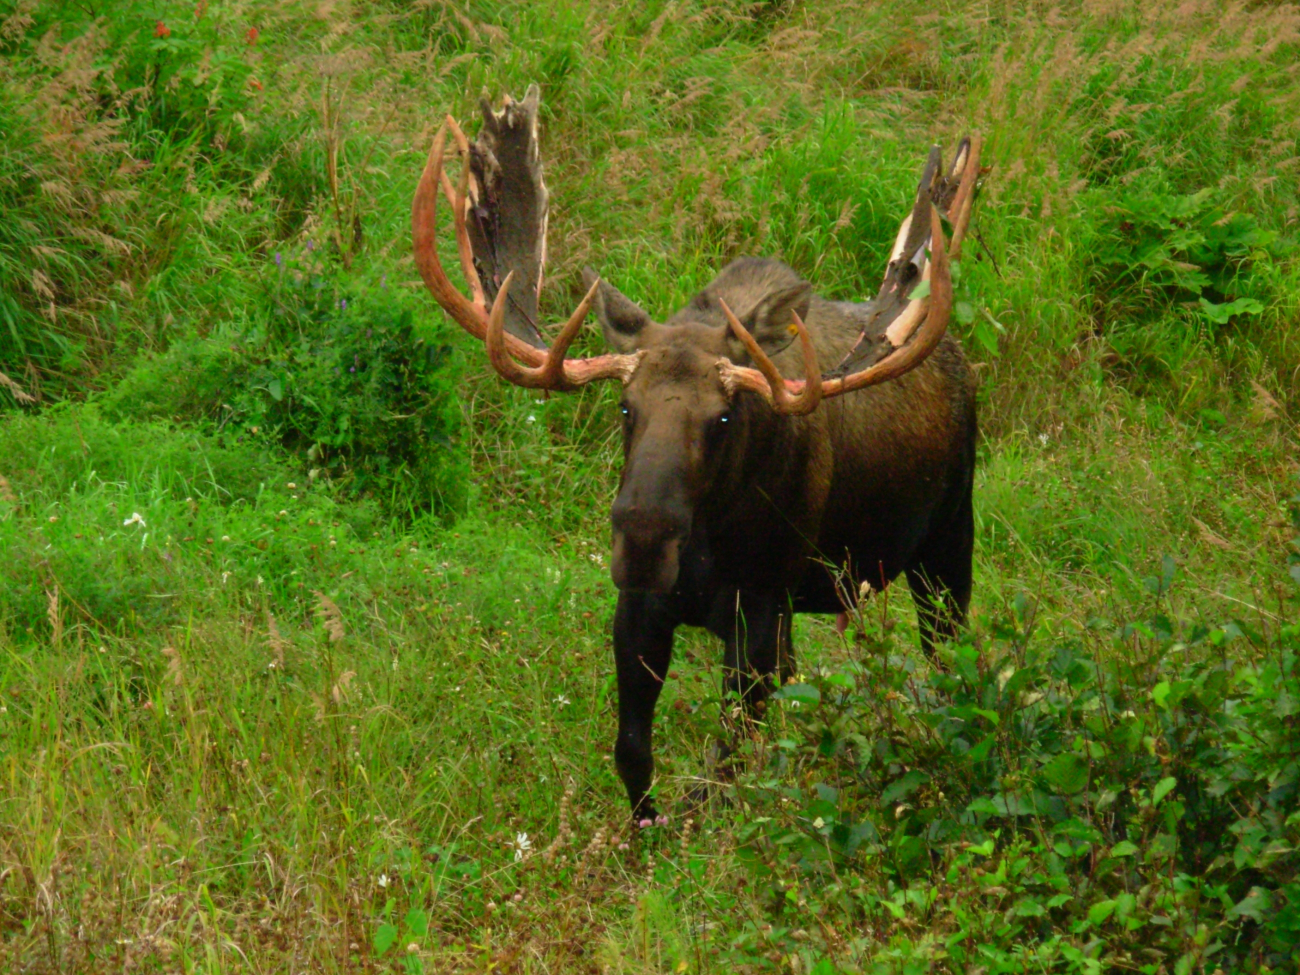 Bull moose still having velvet on antlers